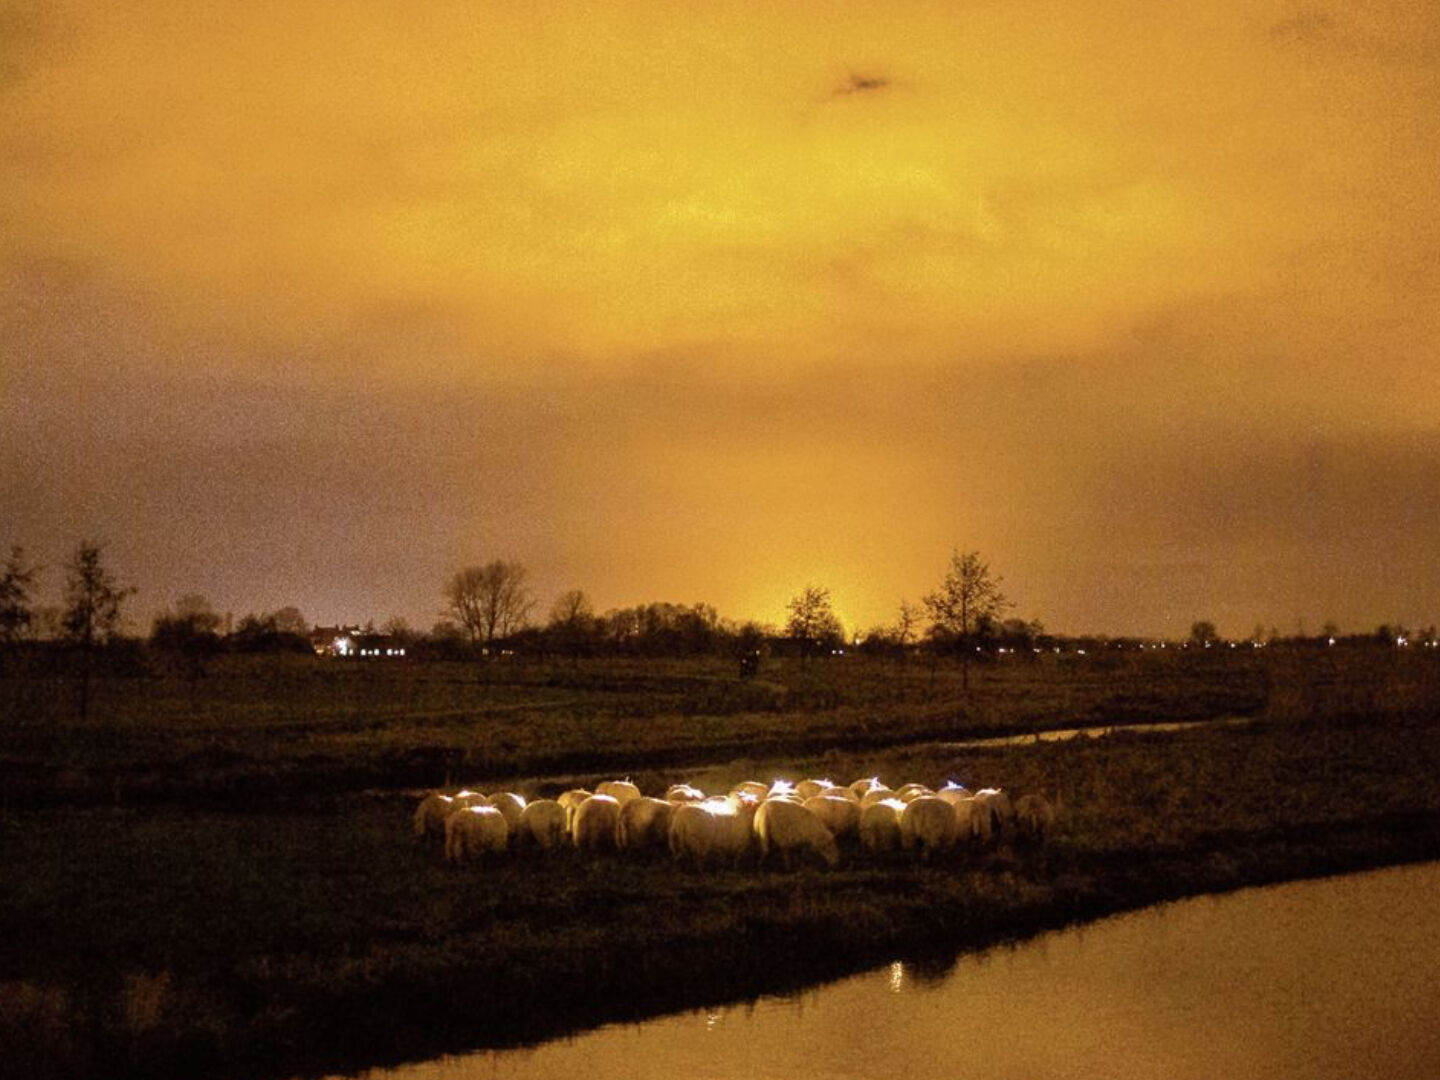 sheeplighting kerst schapen verlicht wandeling vockestaert